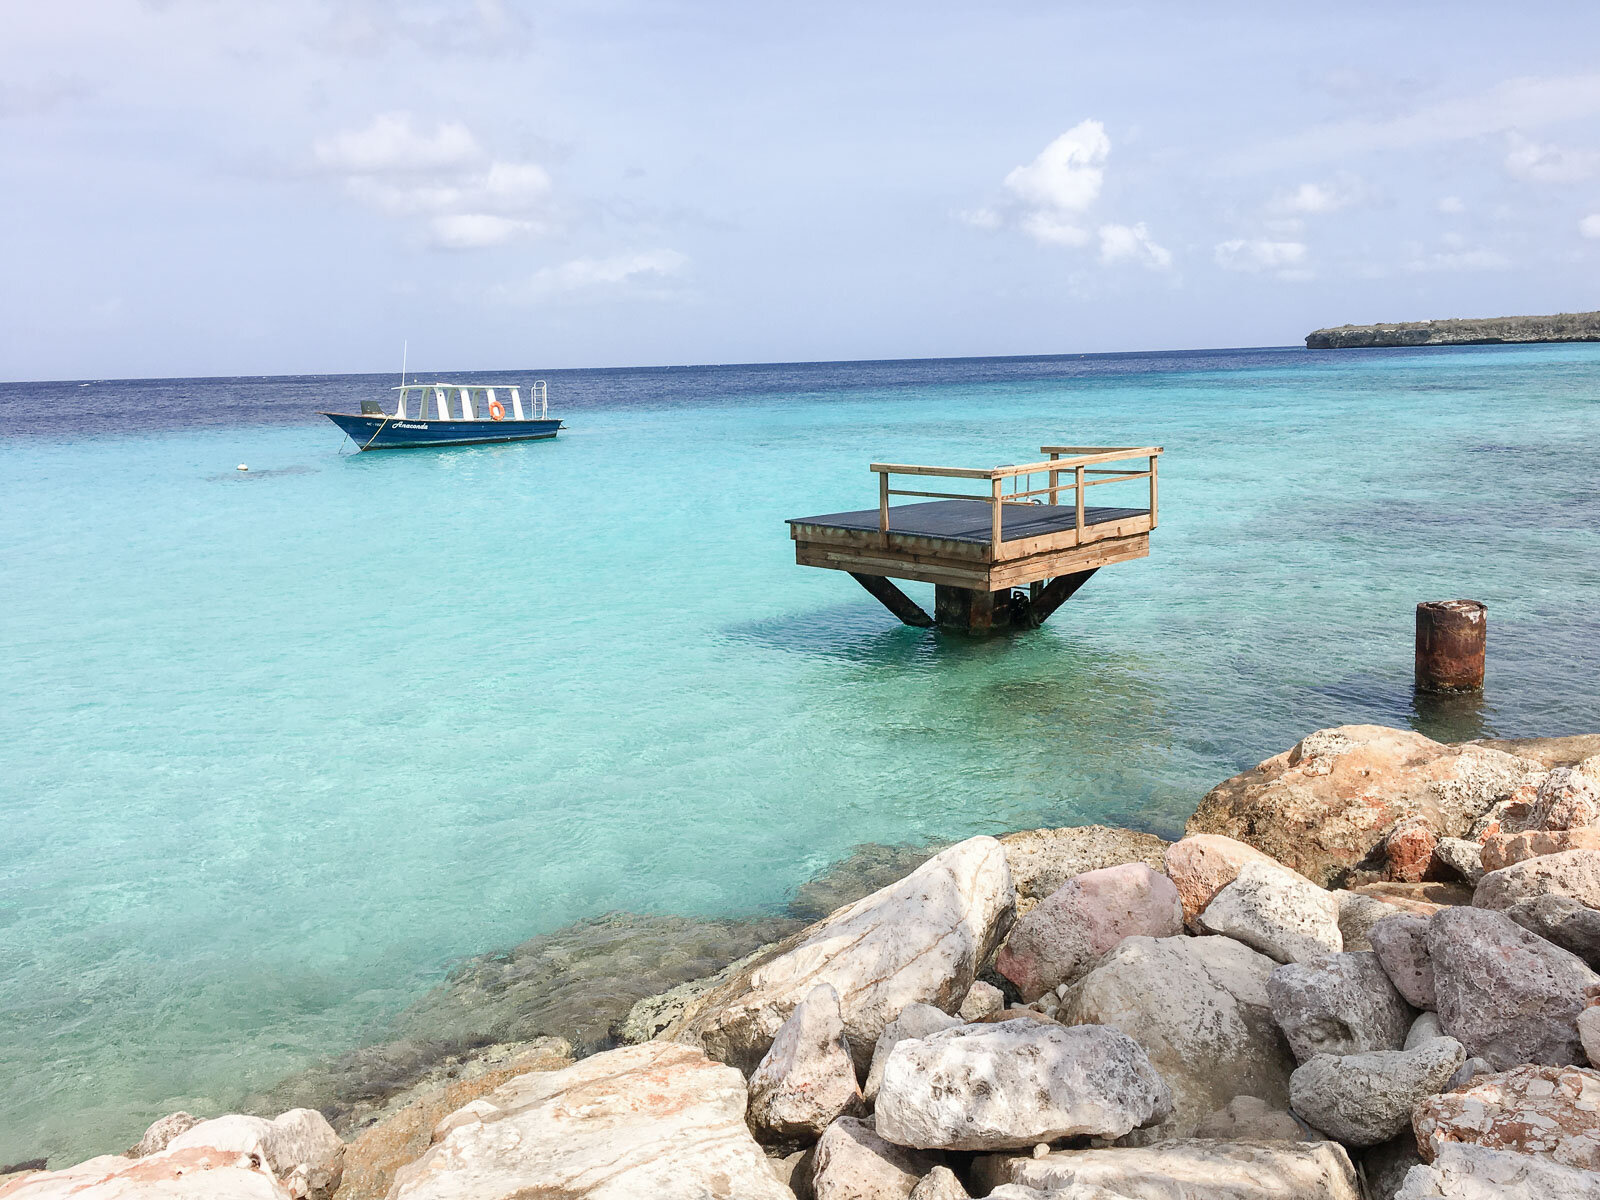 Curaçao – Not the liquor | Travel Diary